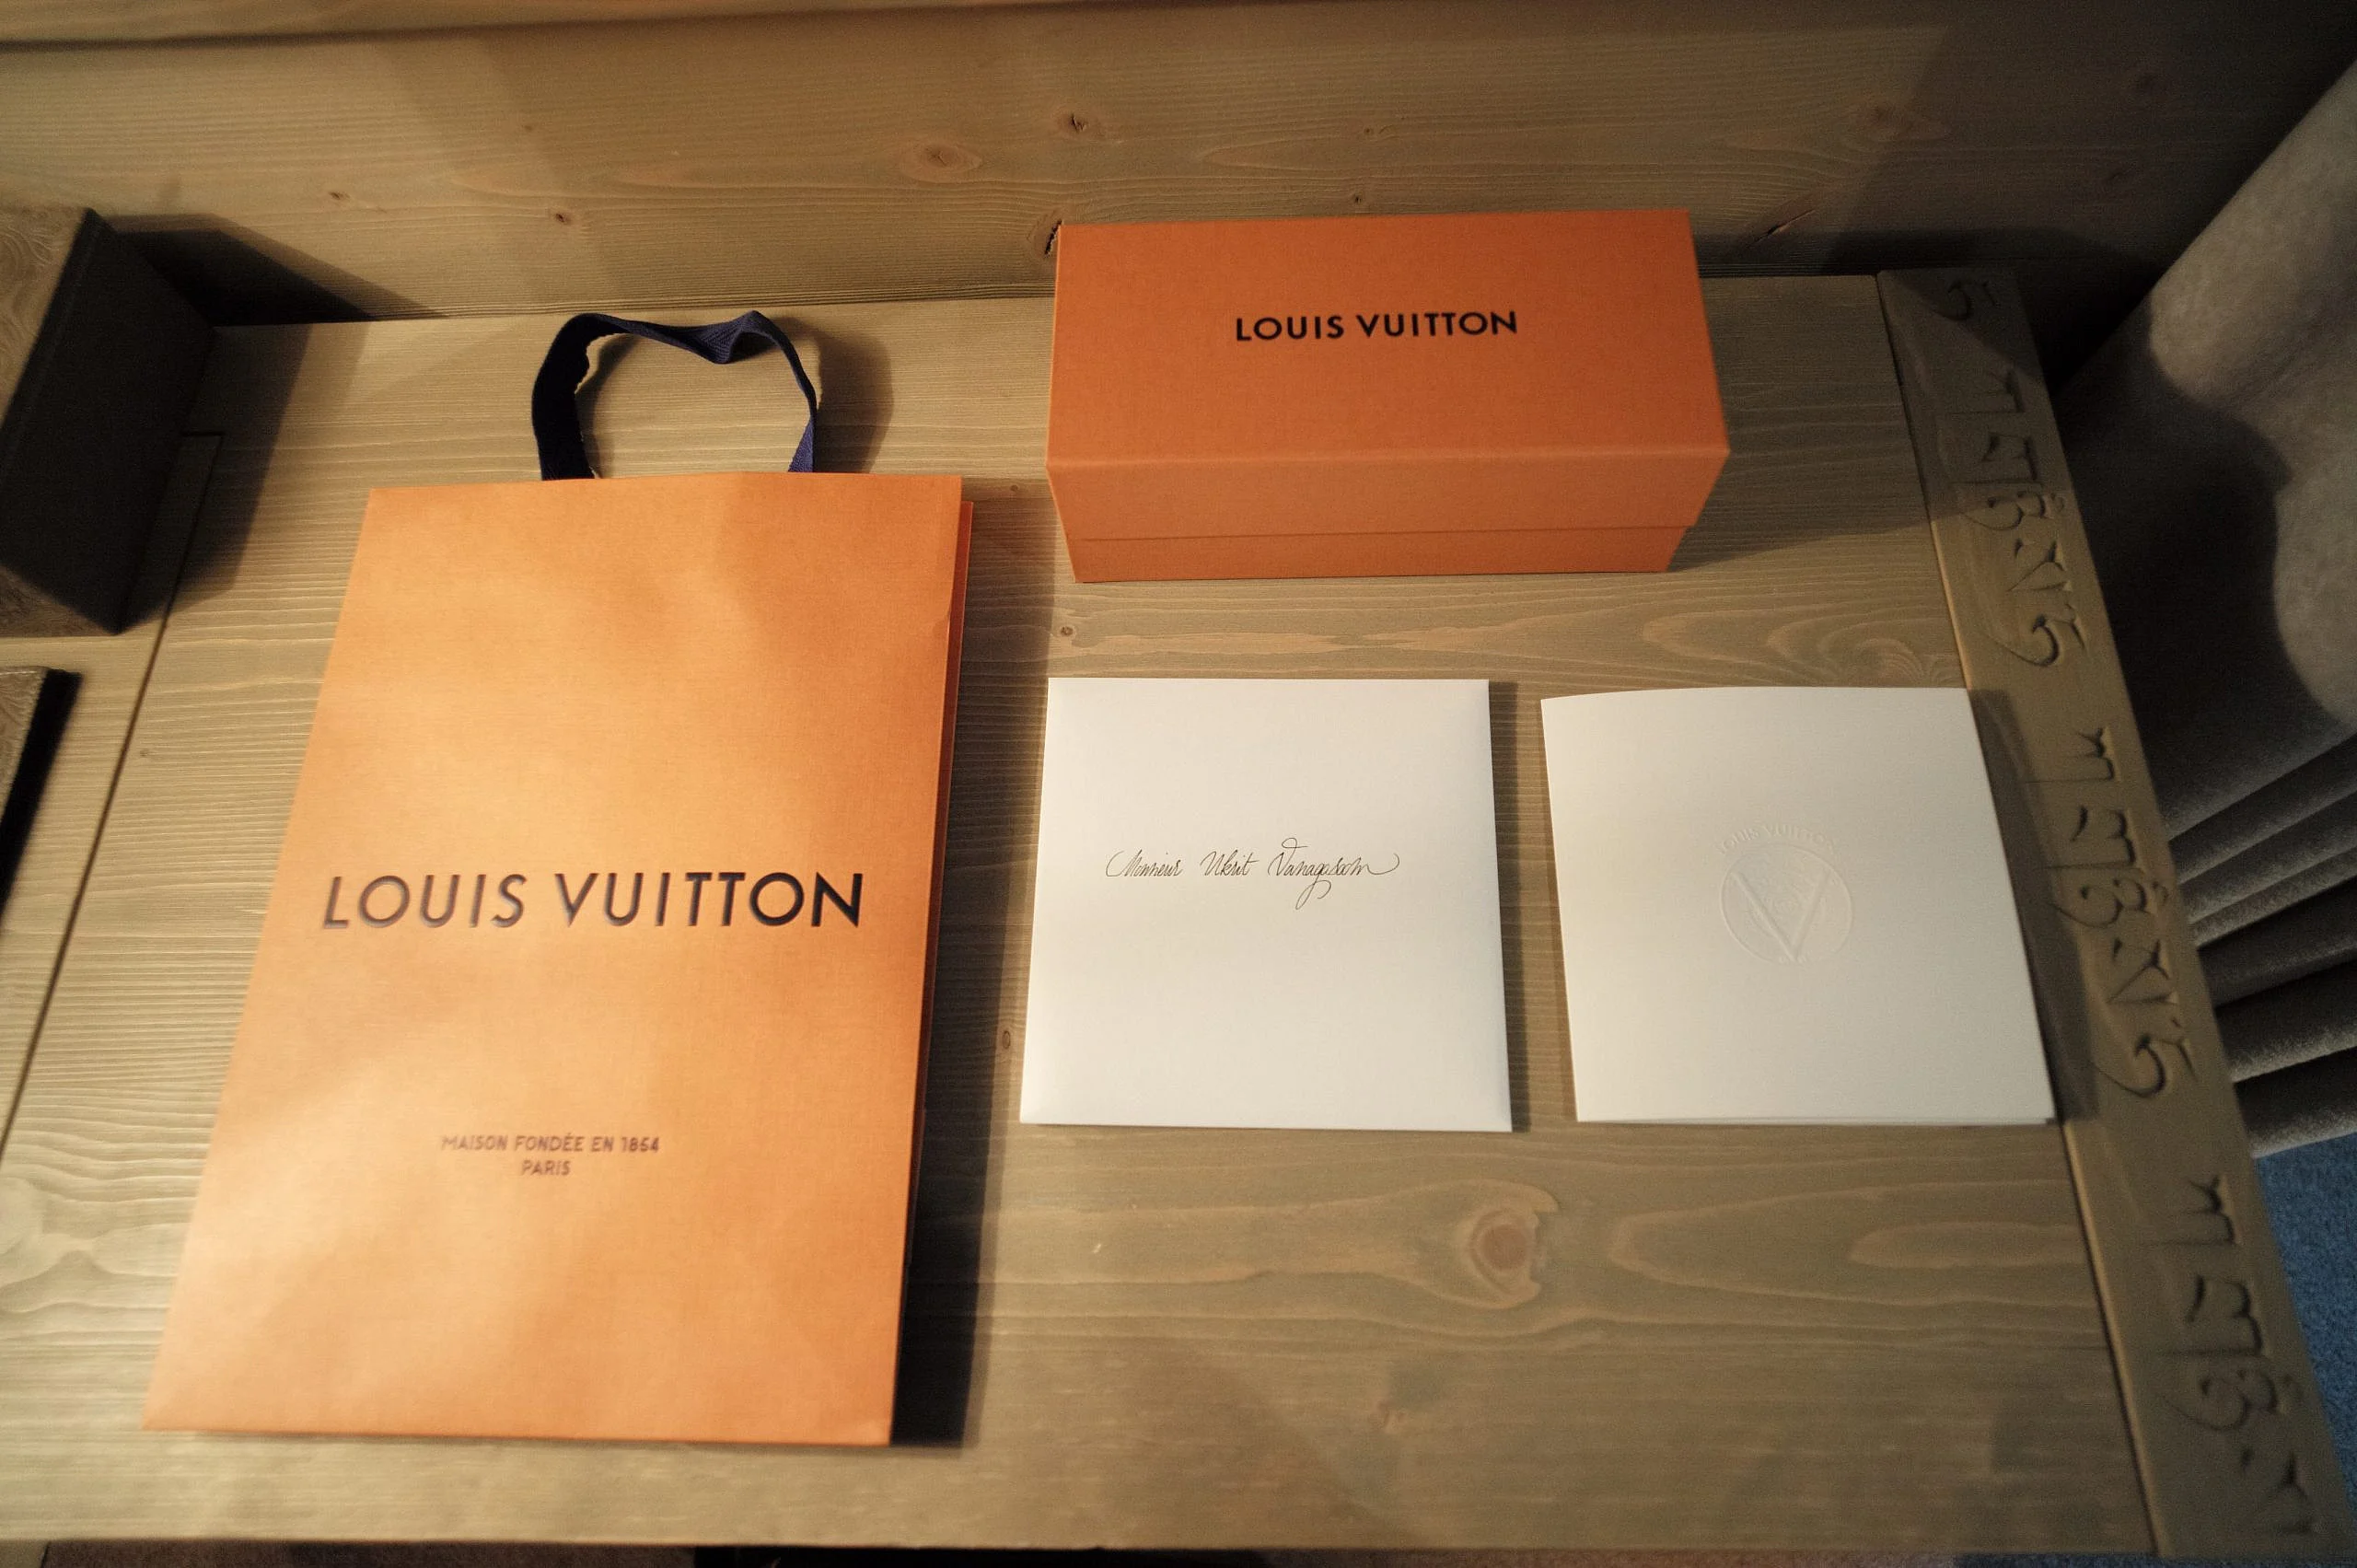 Louis Vuitton International High Watch Event 2019 - Robb Report